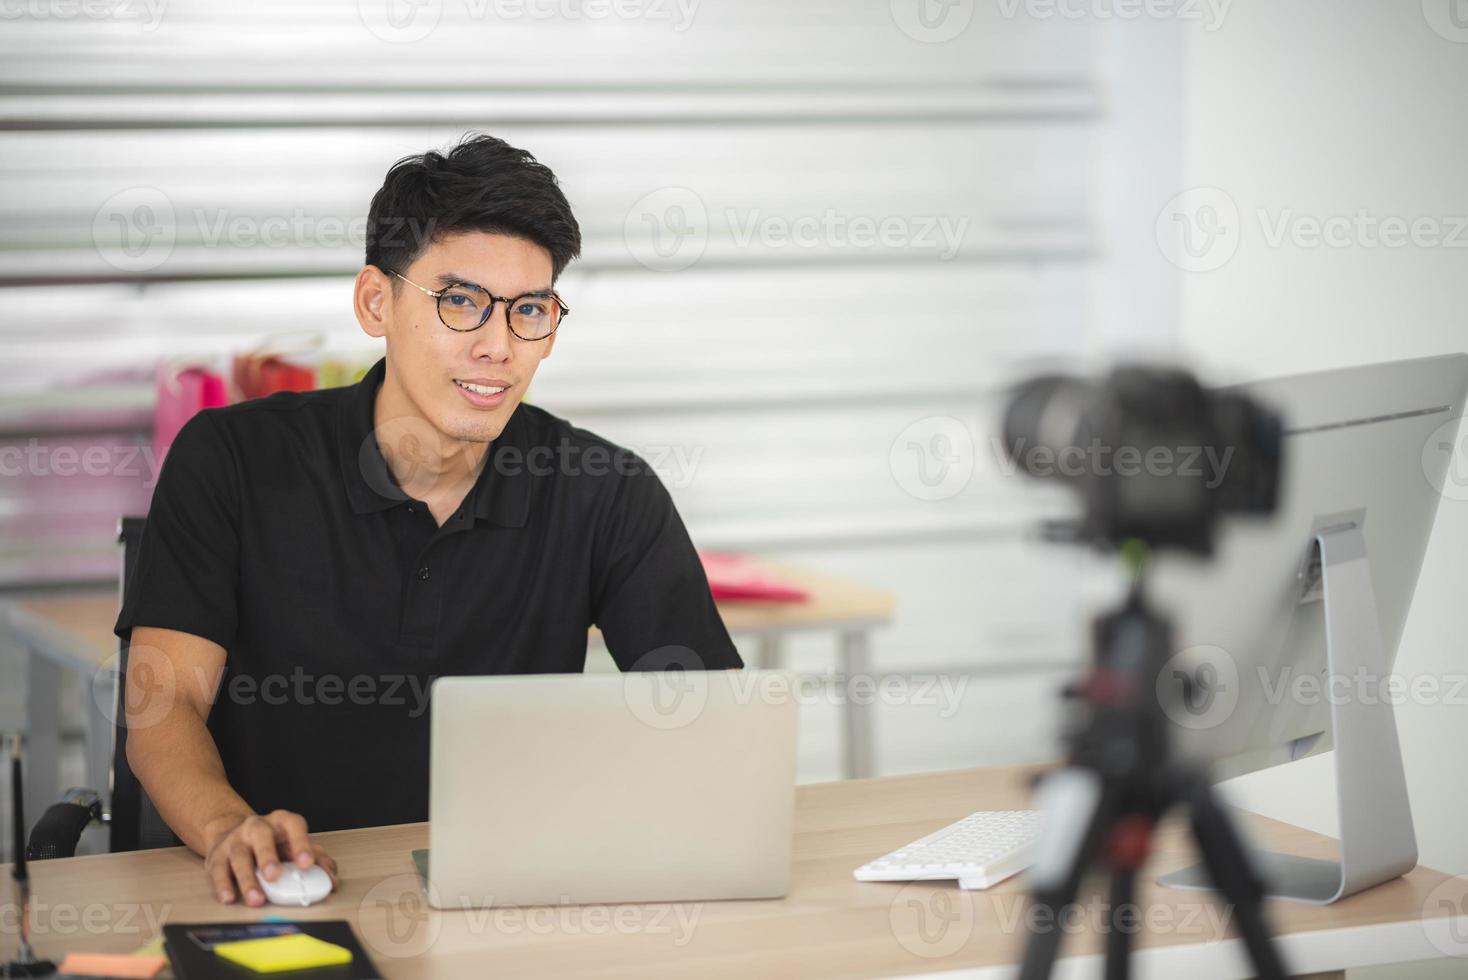 online verkoop en social media marketingconcept, jonge Aziatische man die met camera werkt om live te streamen om een product te verkopen en pakket te tonen om te beoordelen, cyberspace en blogwinkel uit te zenden foto